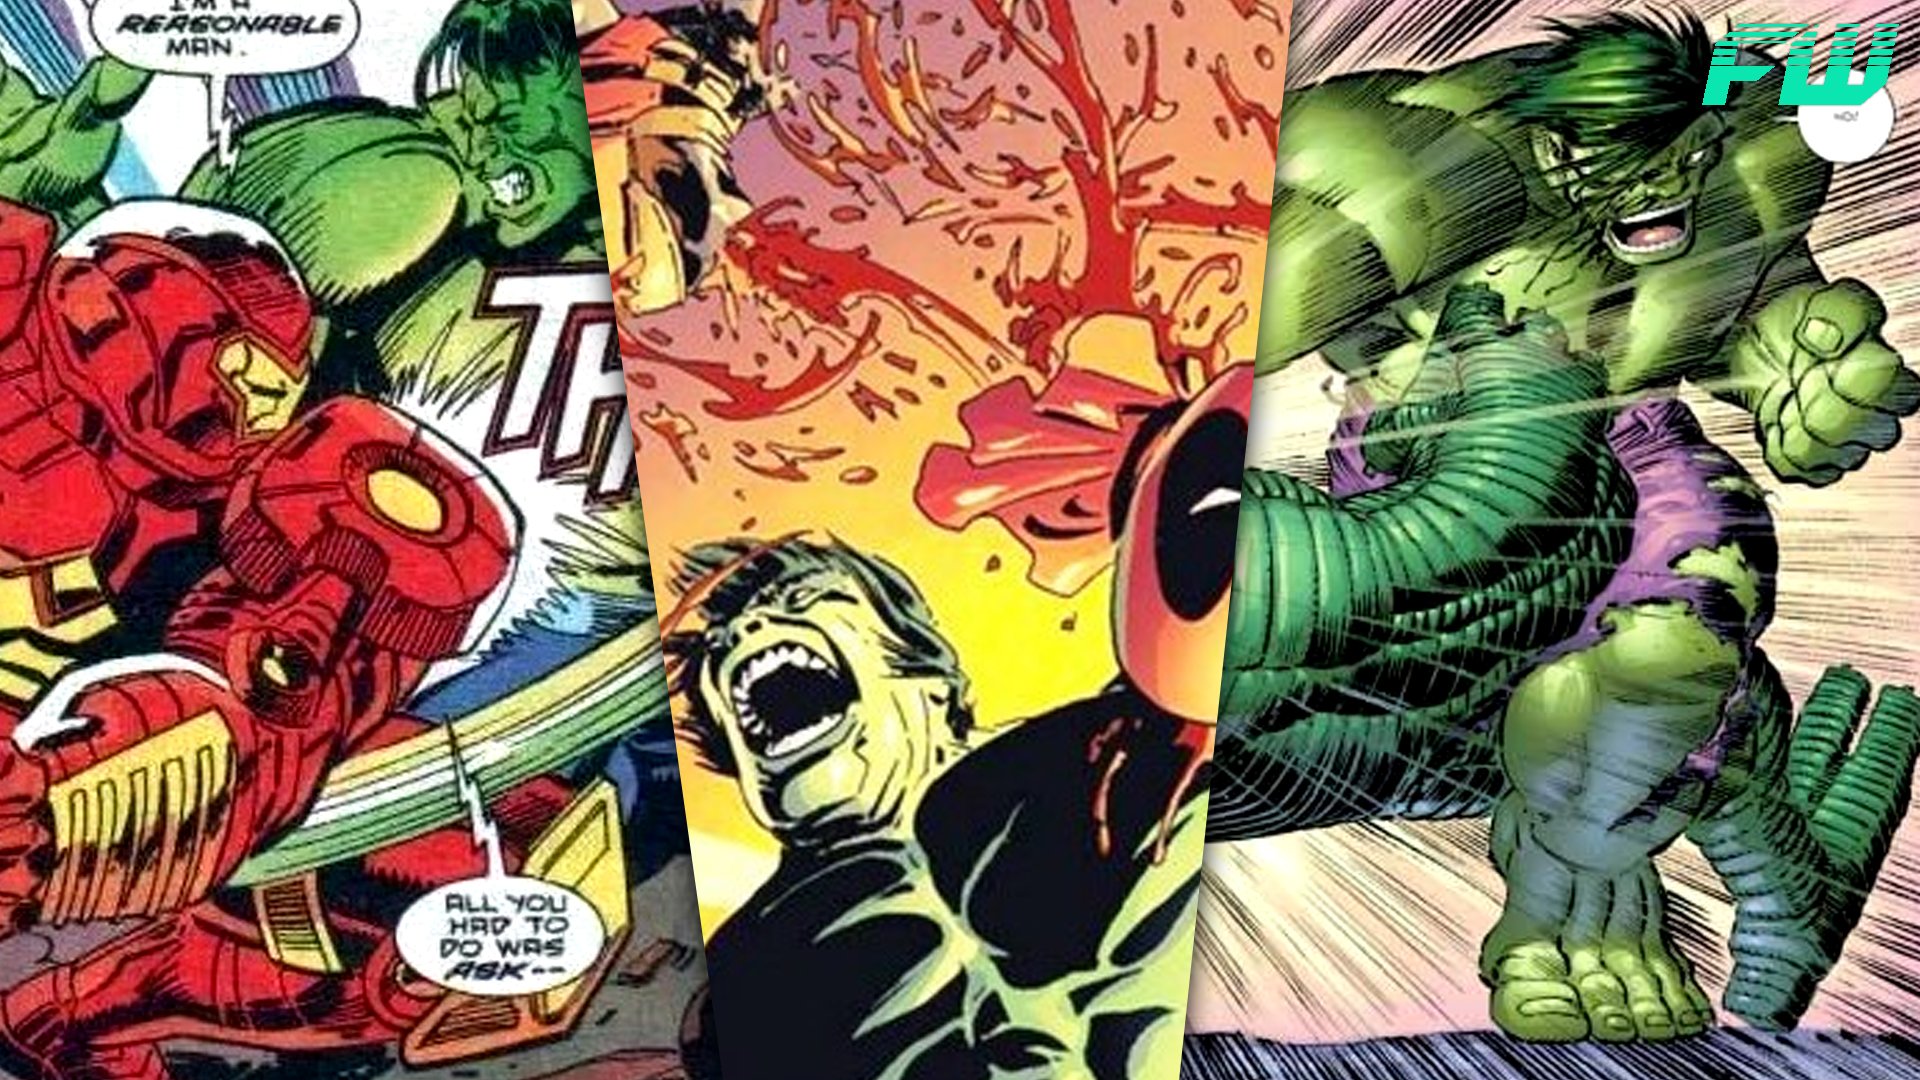 hulk comic strip